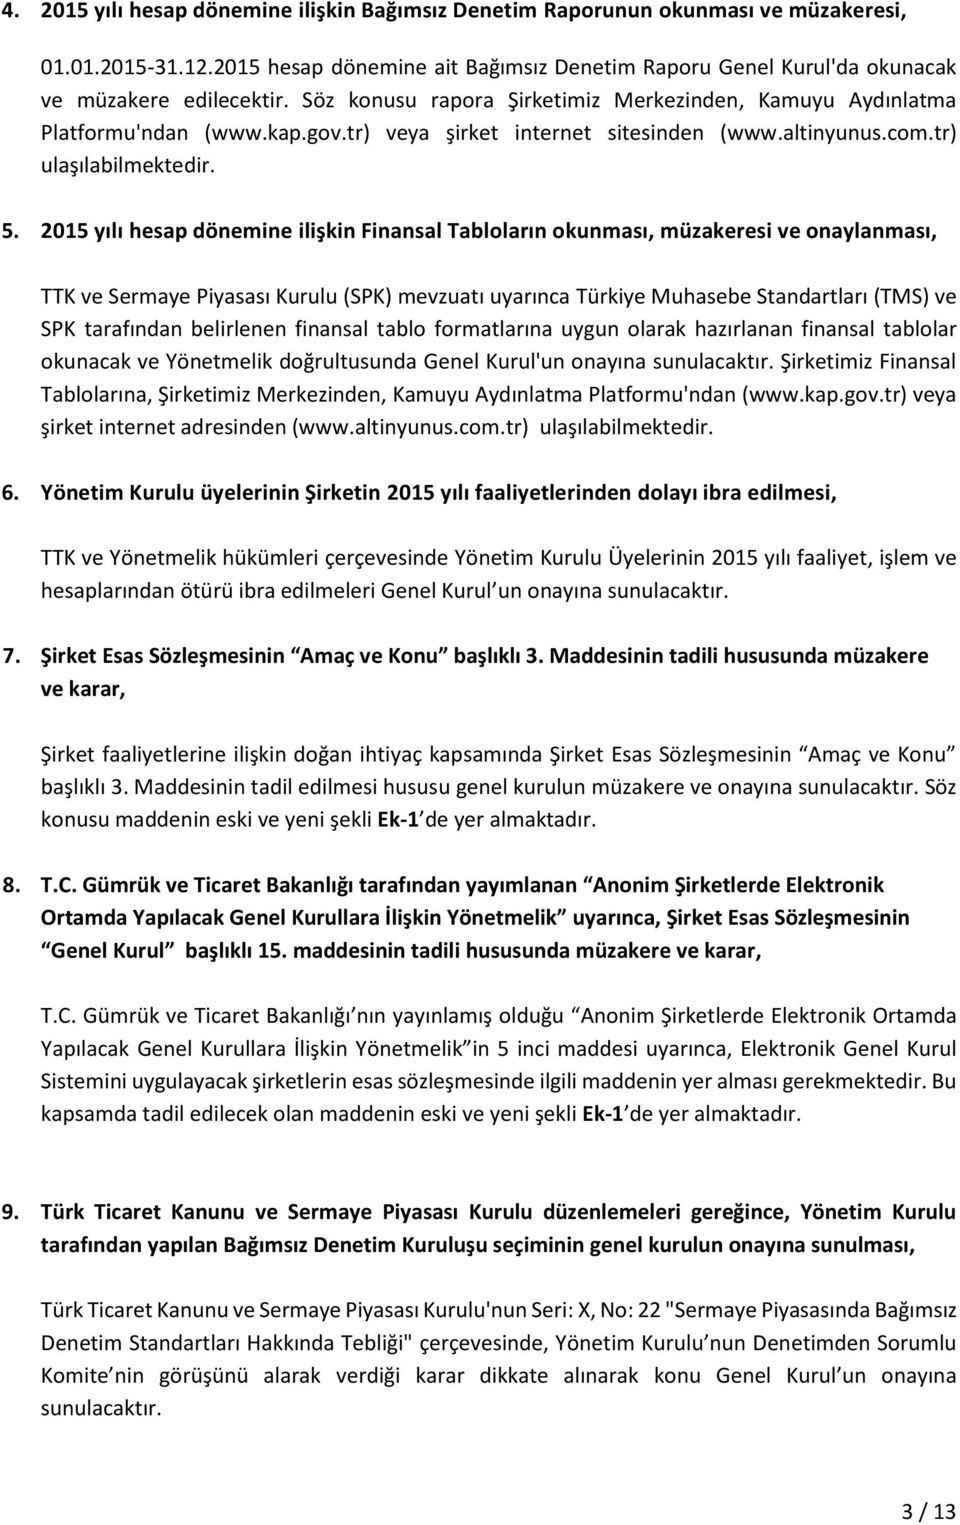 2015 yılı hesap dönemine ilişkin Finansal Tabloların okunması, müzakeresi ve onaylanması, TTK ve Sermaye Piyasası Kurulu (SPK) mevzuatı uyarınca Türkiye Muhasebe Standartları (TMS) ve SPK tarafından